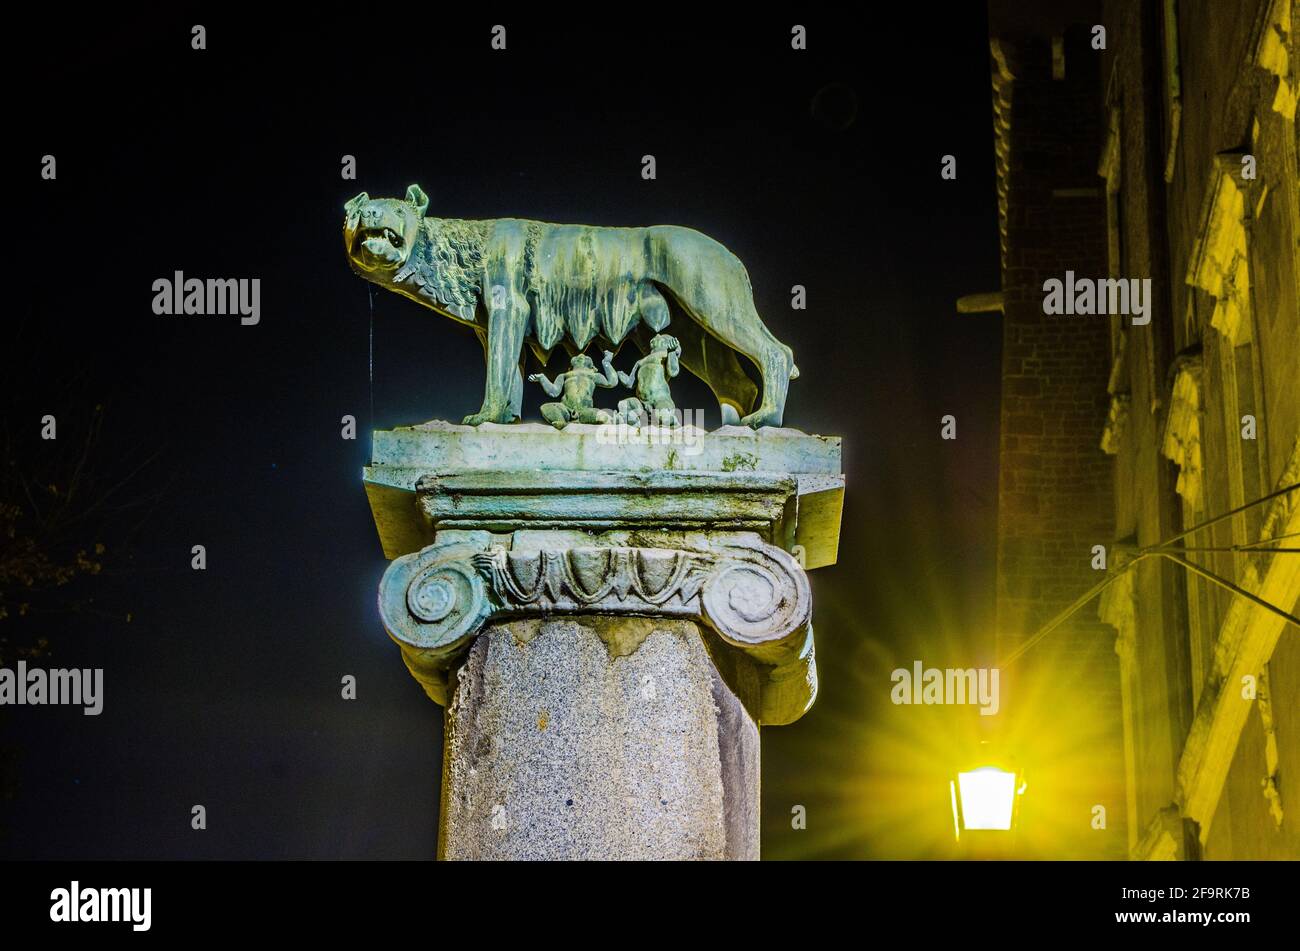 détail nocturne du symbole de rome: elle-loup allaitant romulus et remus Banque D'Images